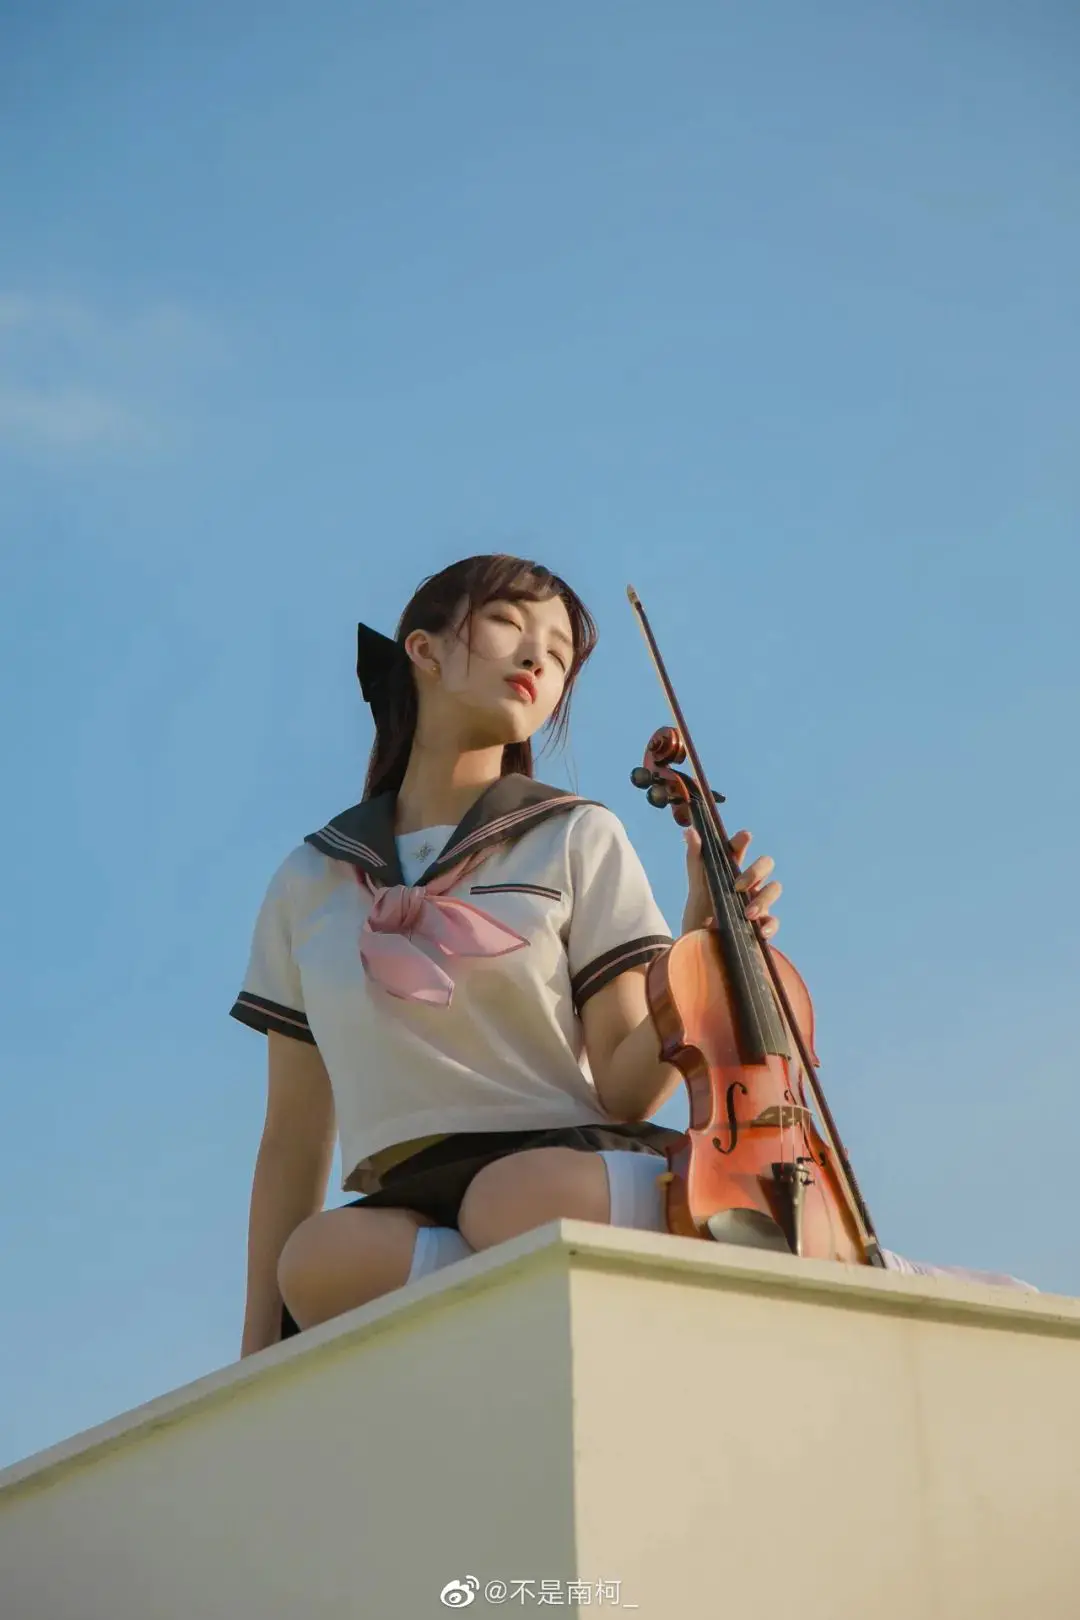 jk制服写真：天台上的JK制服与小提琴插图3